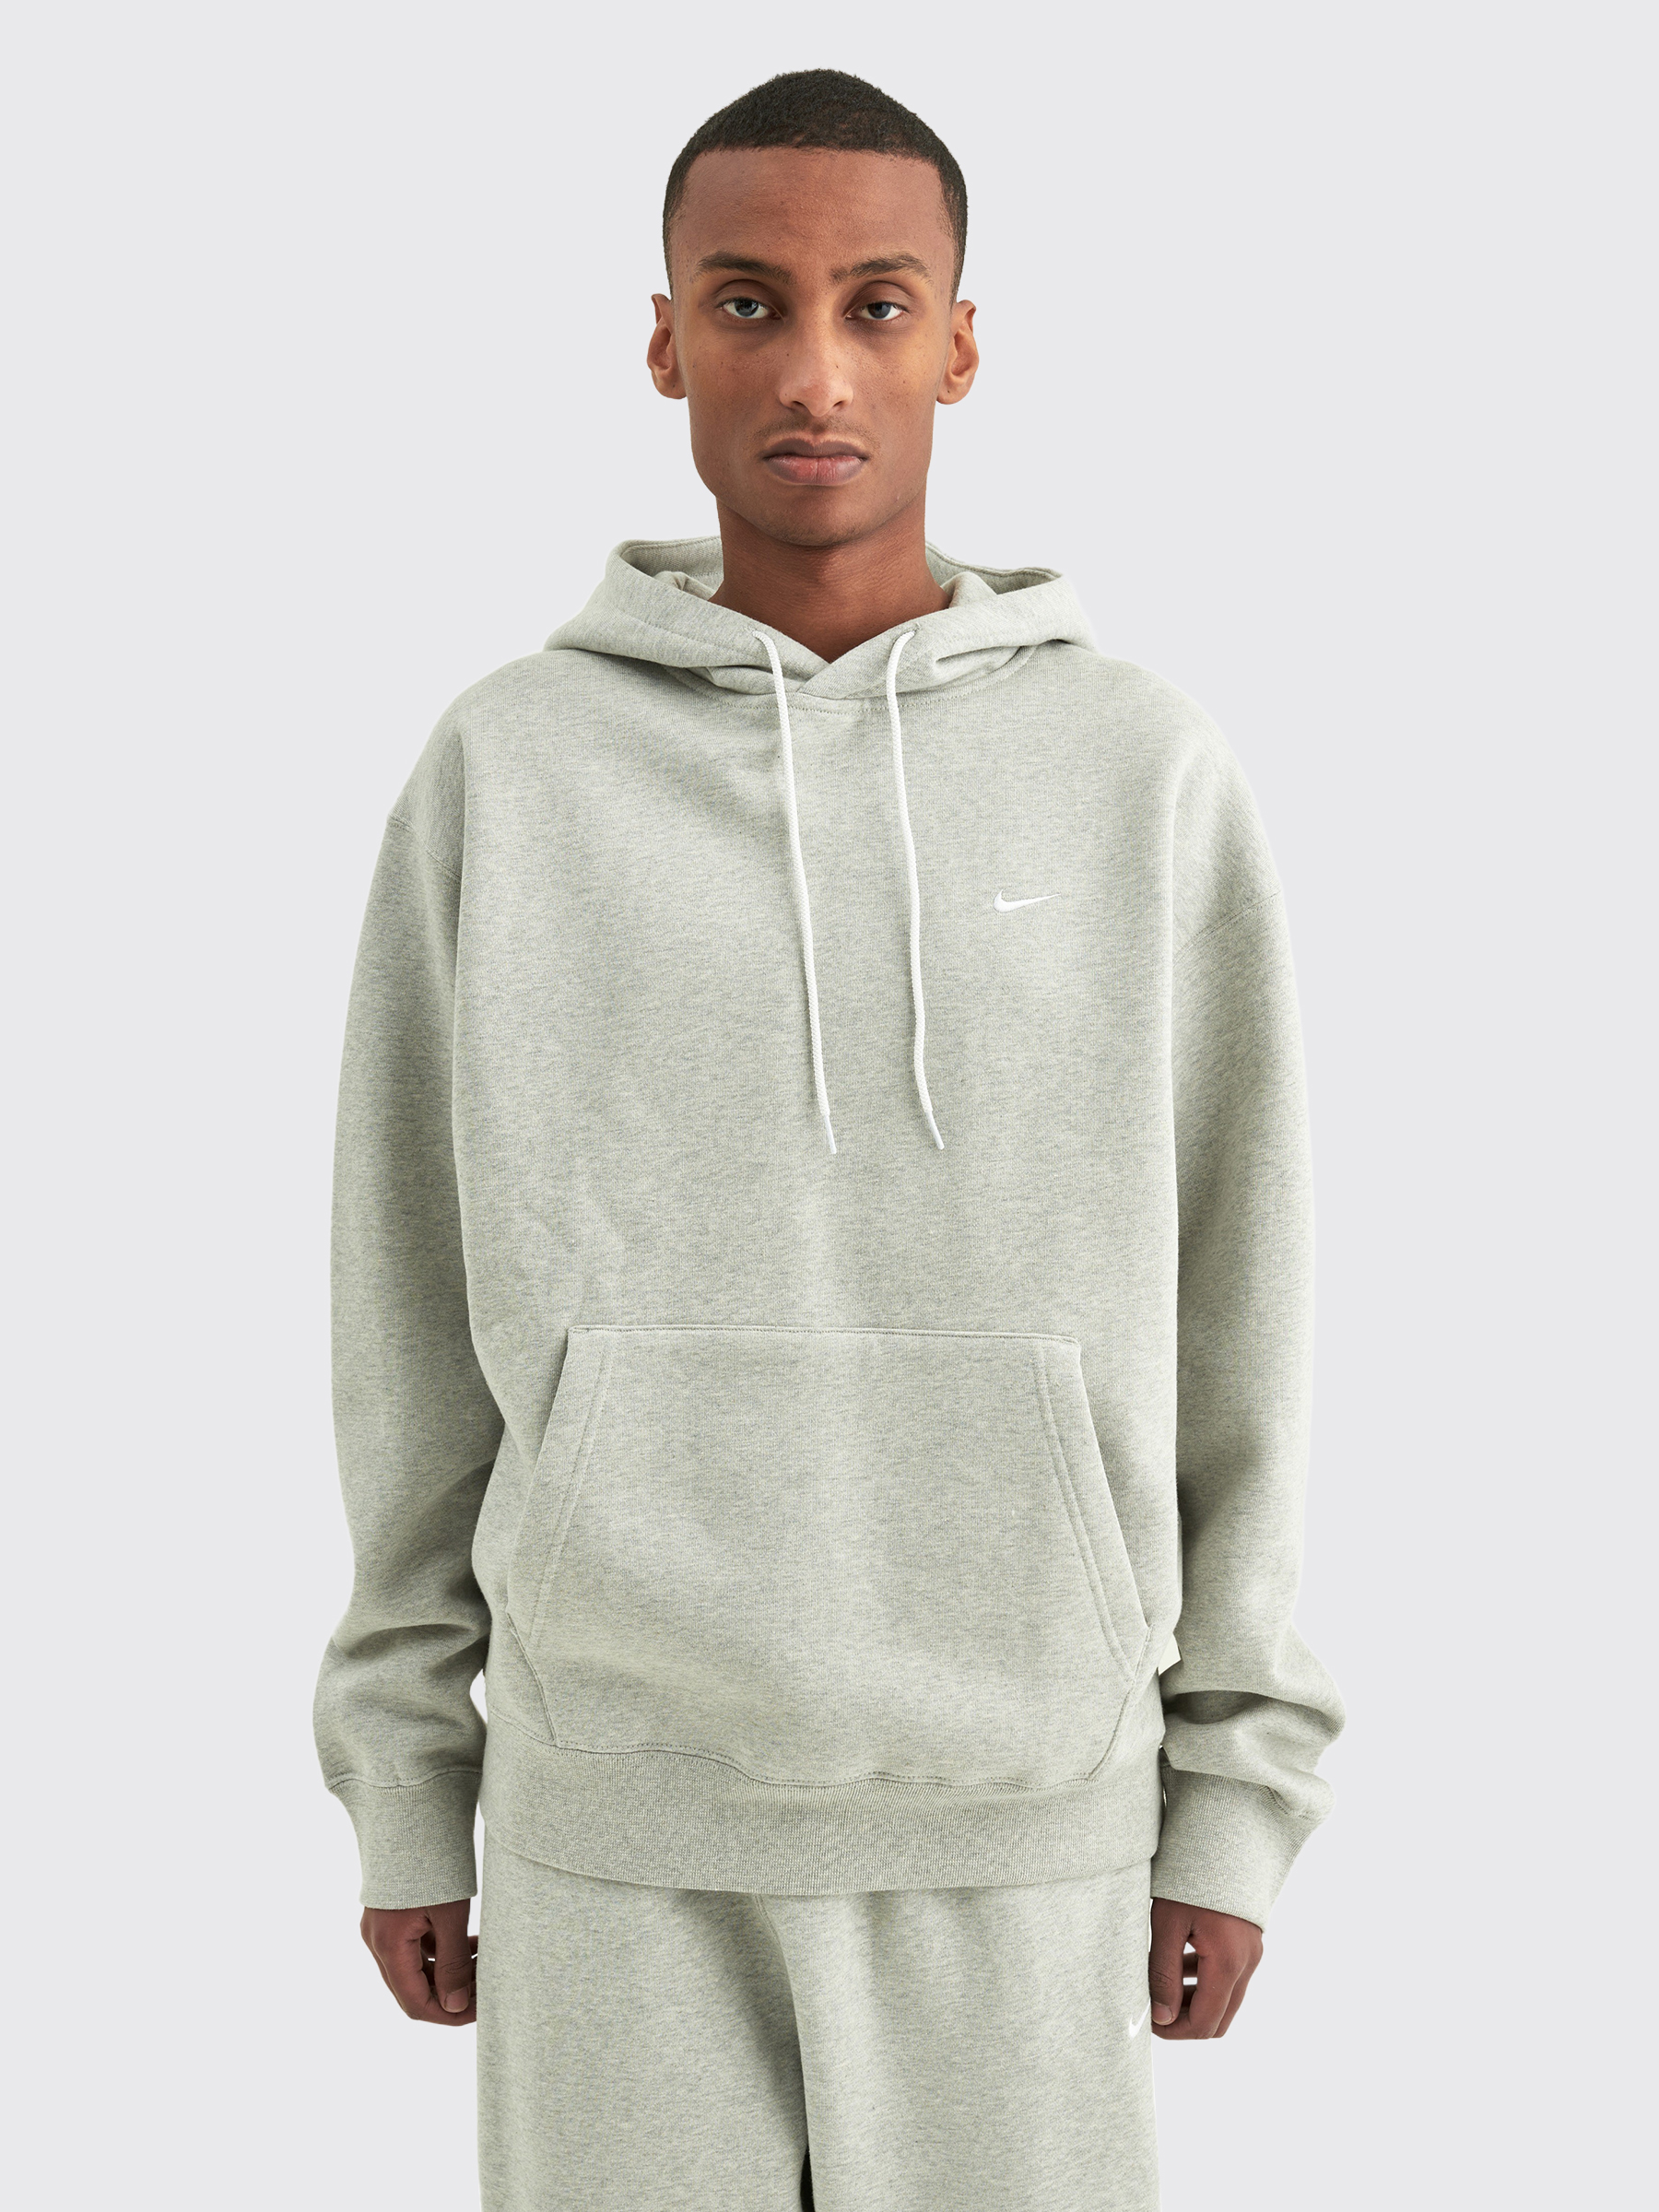 nikelab grey hoodie